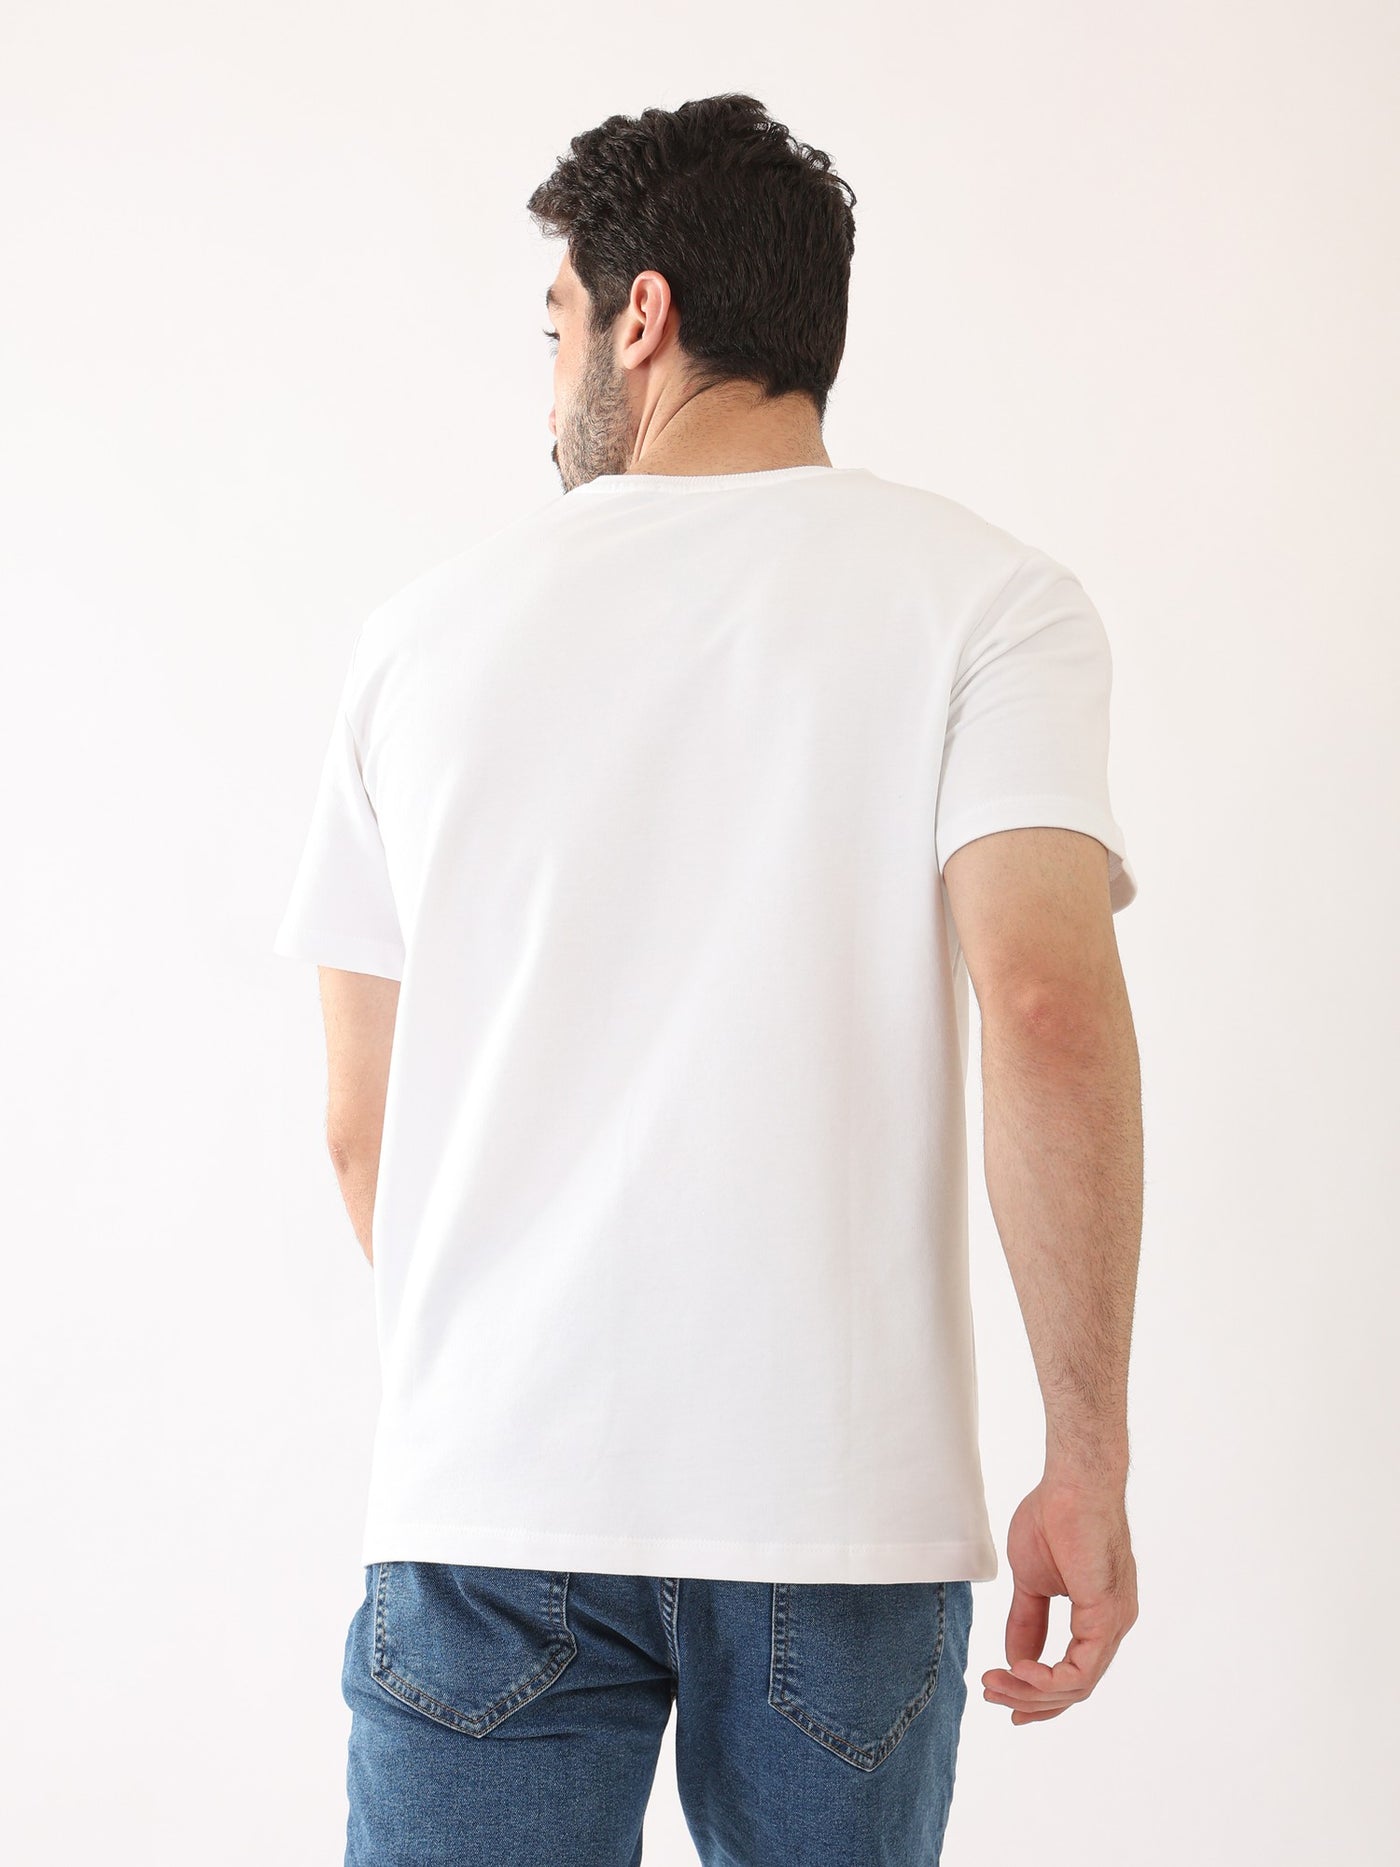 T-Shirt - Plain - Half Sleeve